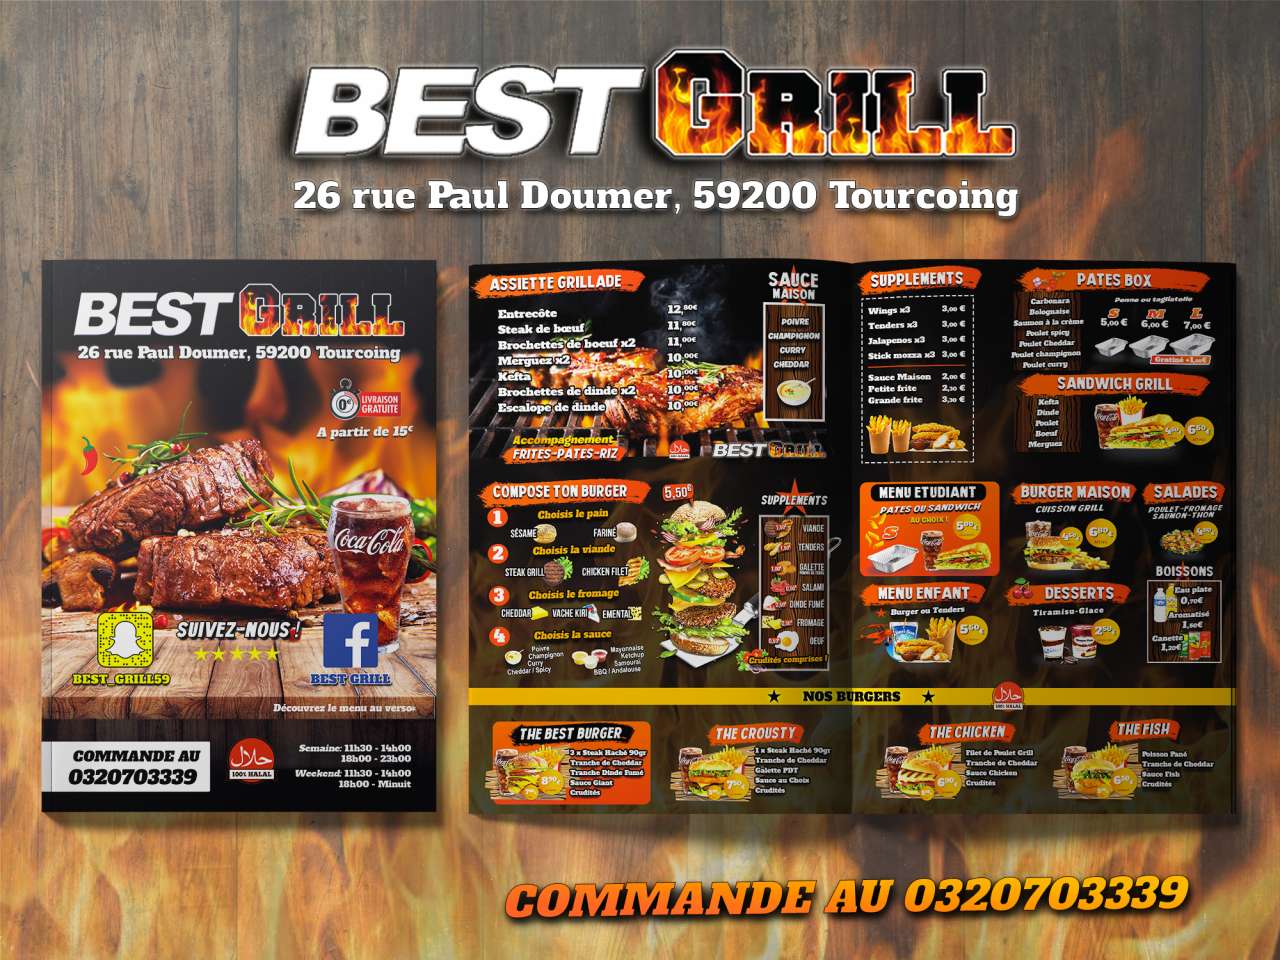 Best Grill - Fastfood à Tourcoing (59200) - Adresse et téléphone sur  l'annuaire Hoodspot